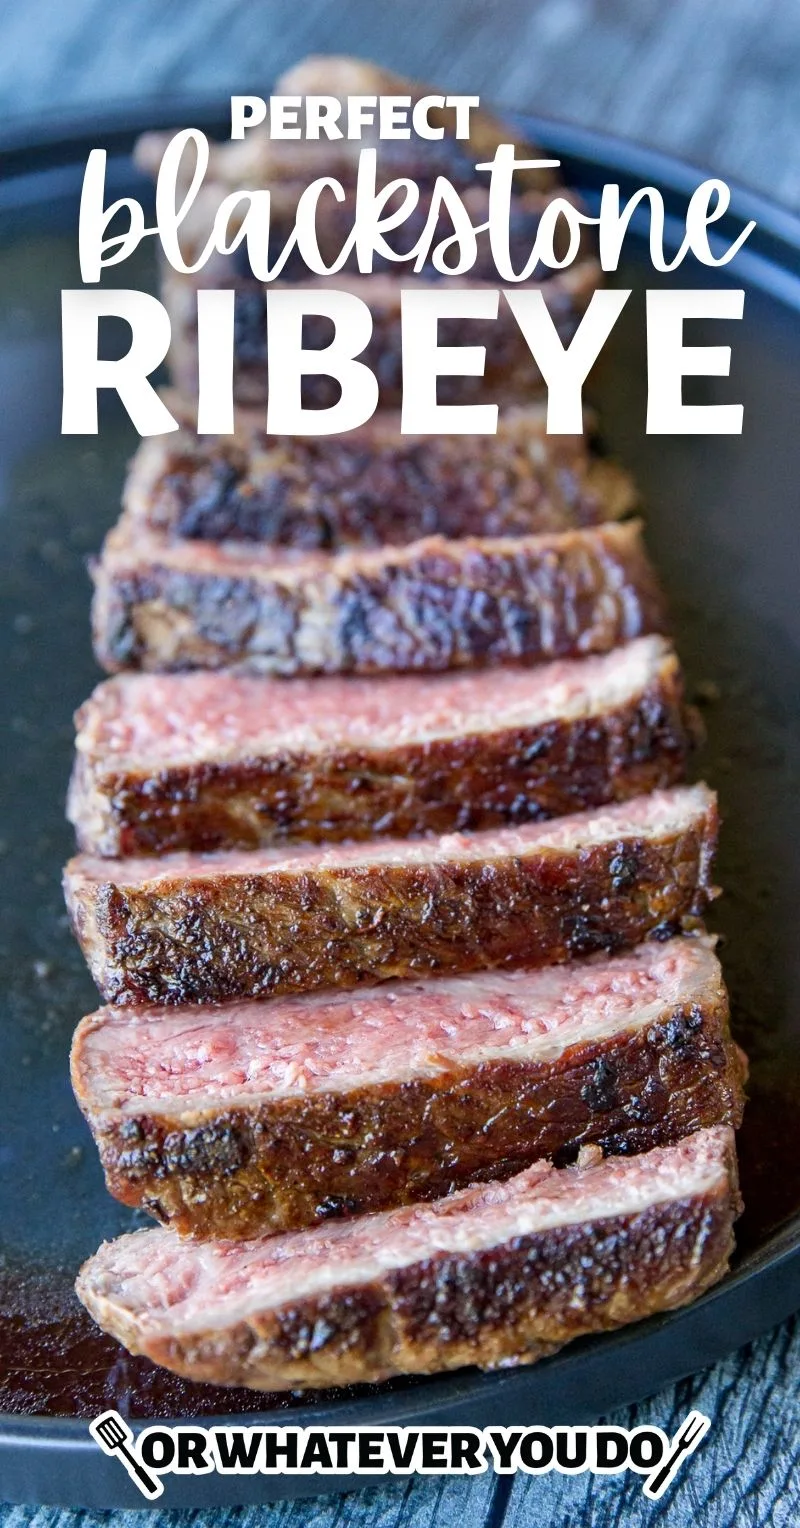 Blackstone Griddle Ribeye Steak & Mushrooms - Handmade in the